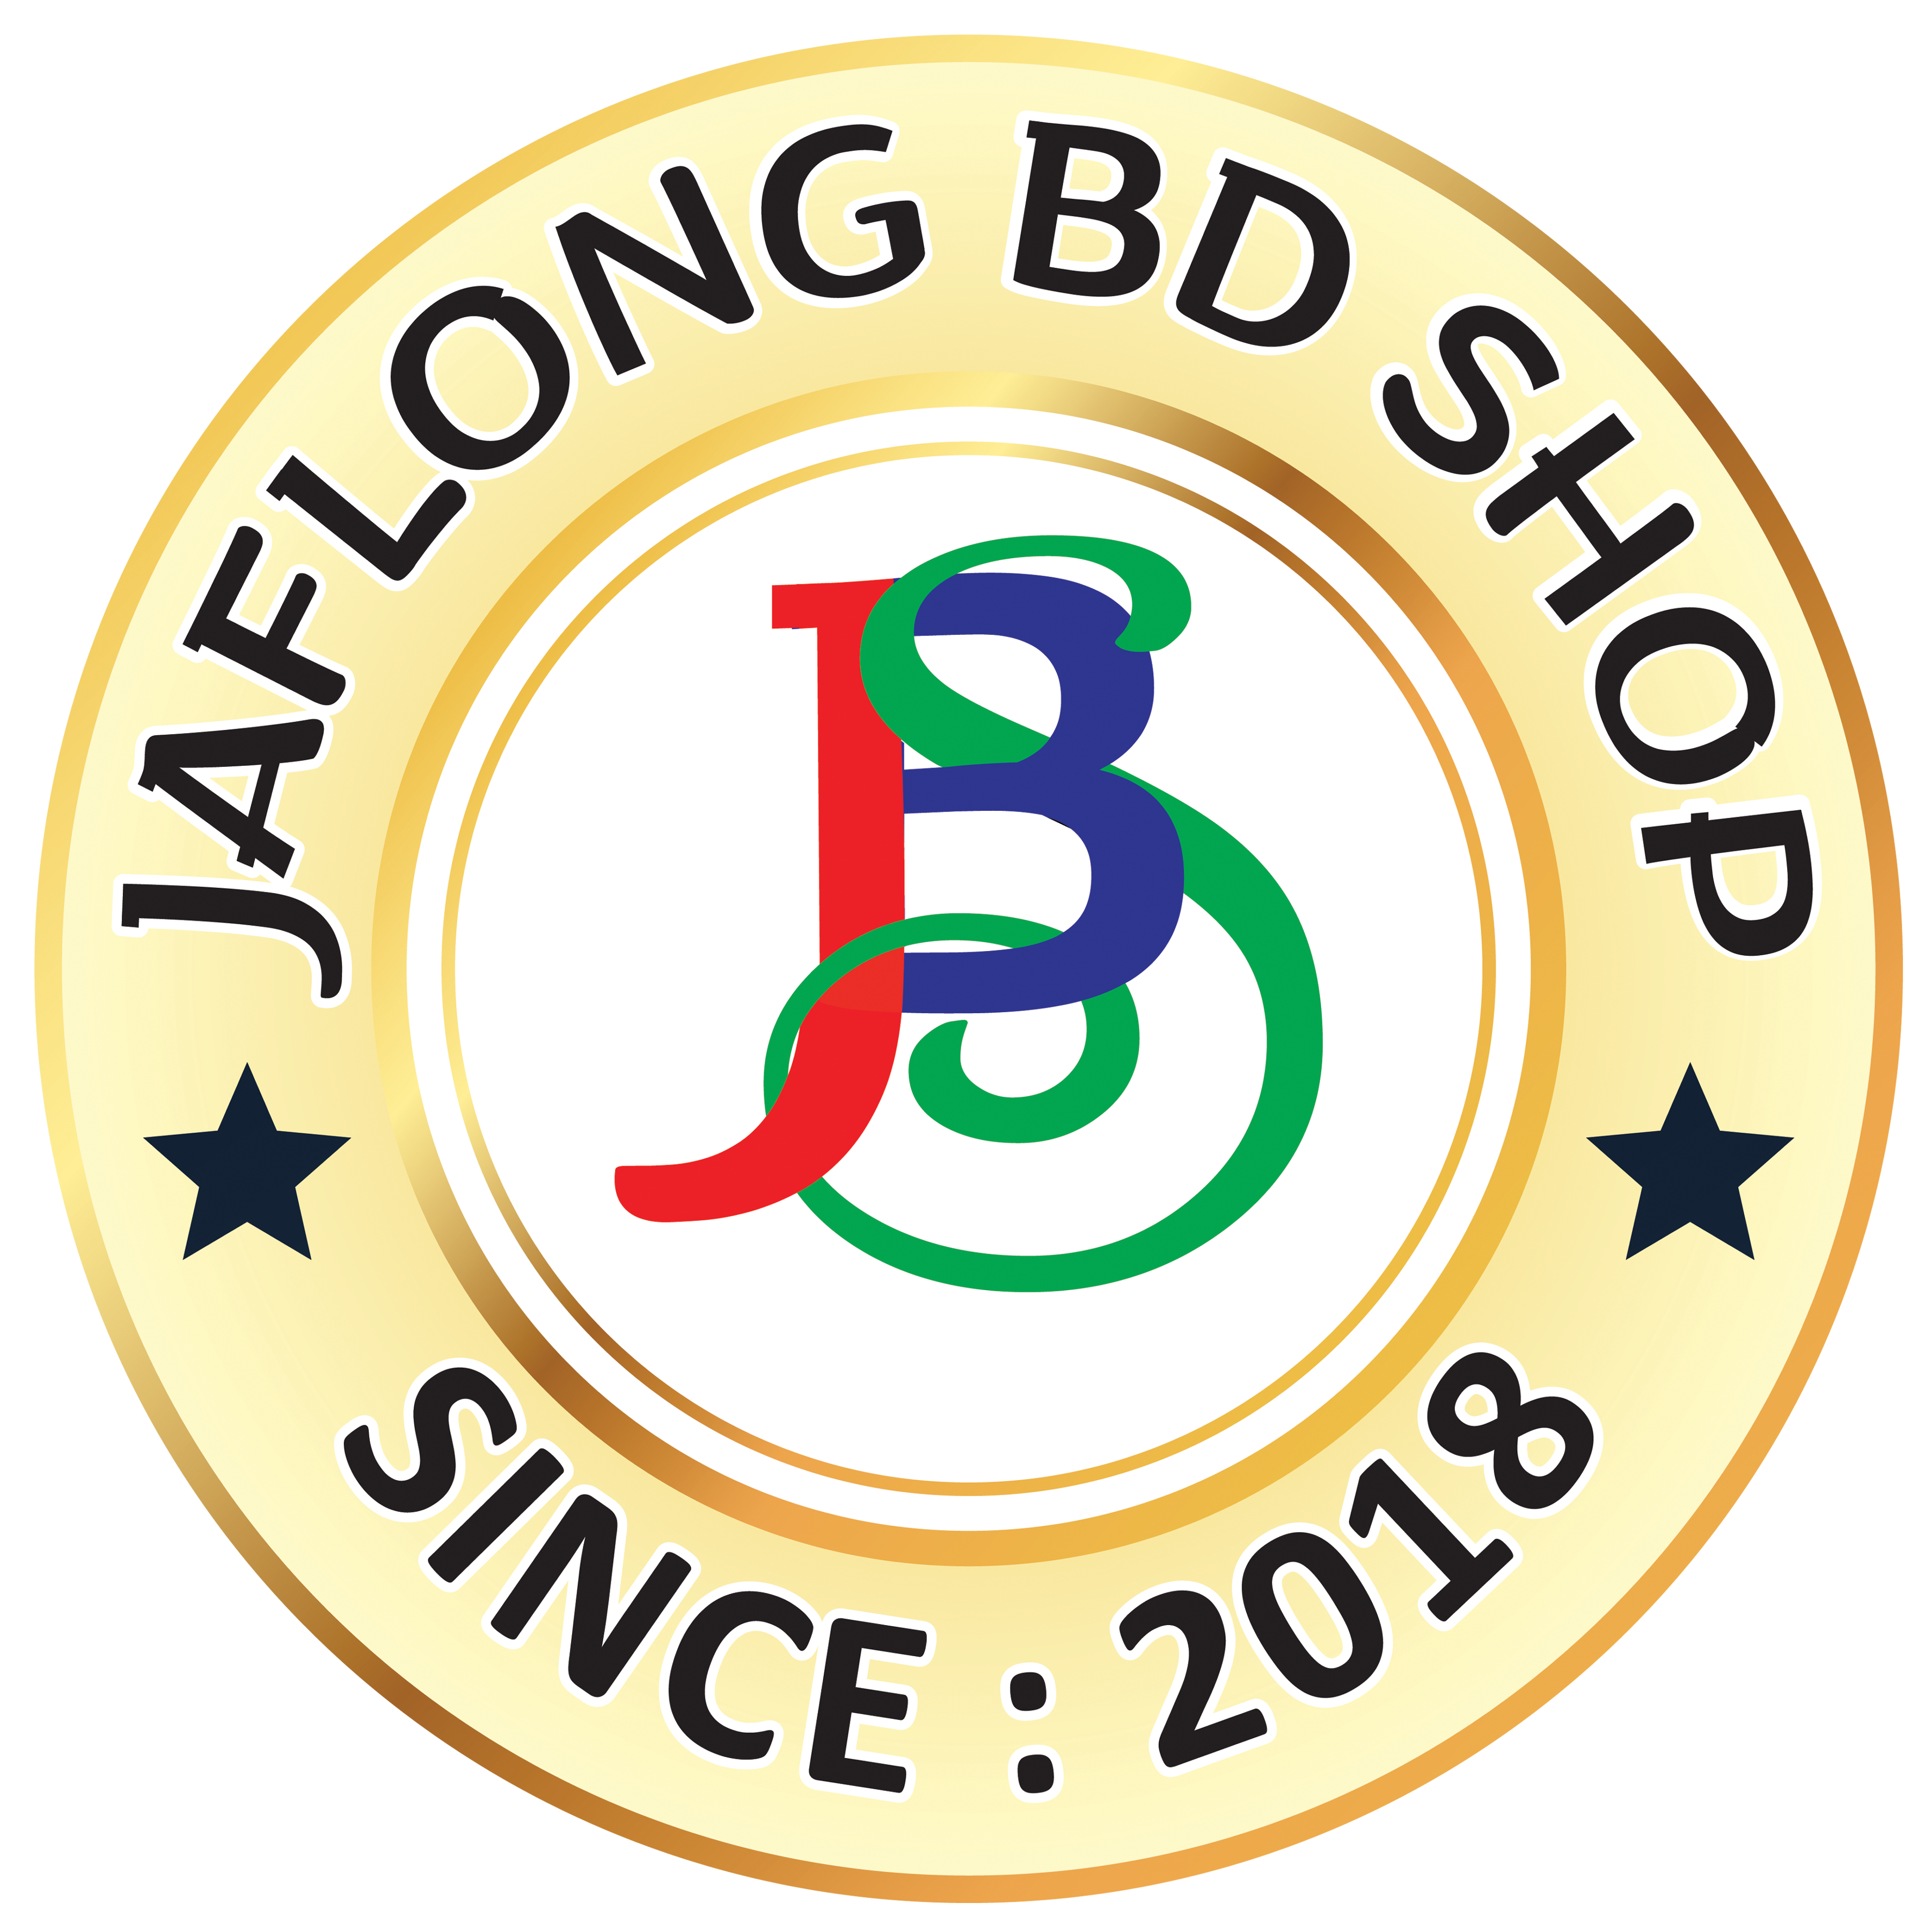 Jaflong BD Shop